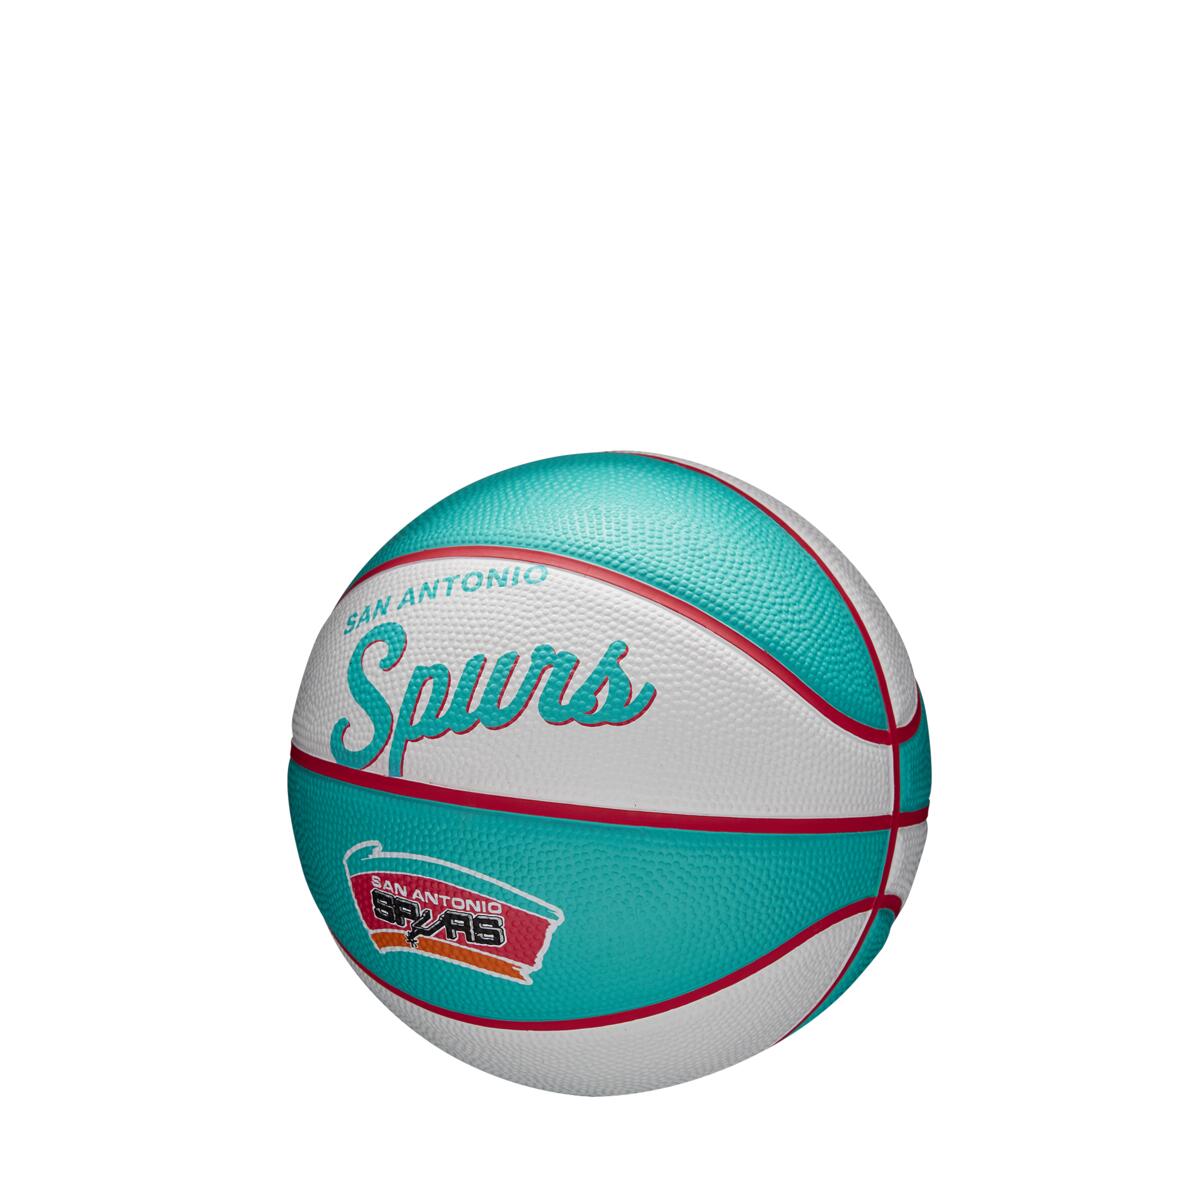 Ballons de basket NBA Retro Mini San Antonio Spurs